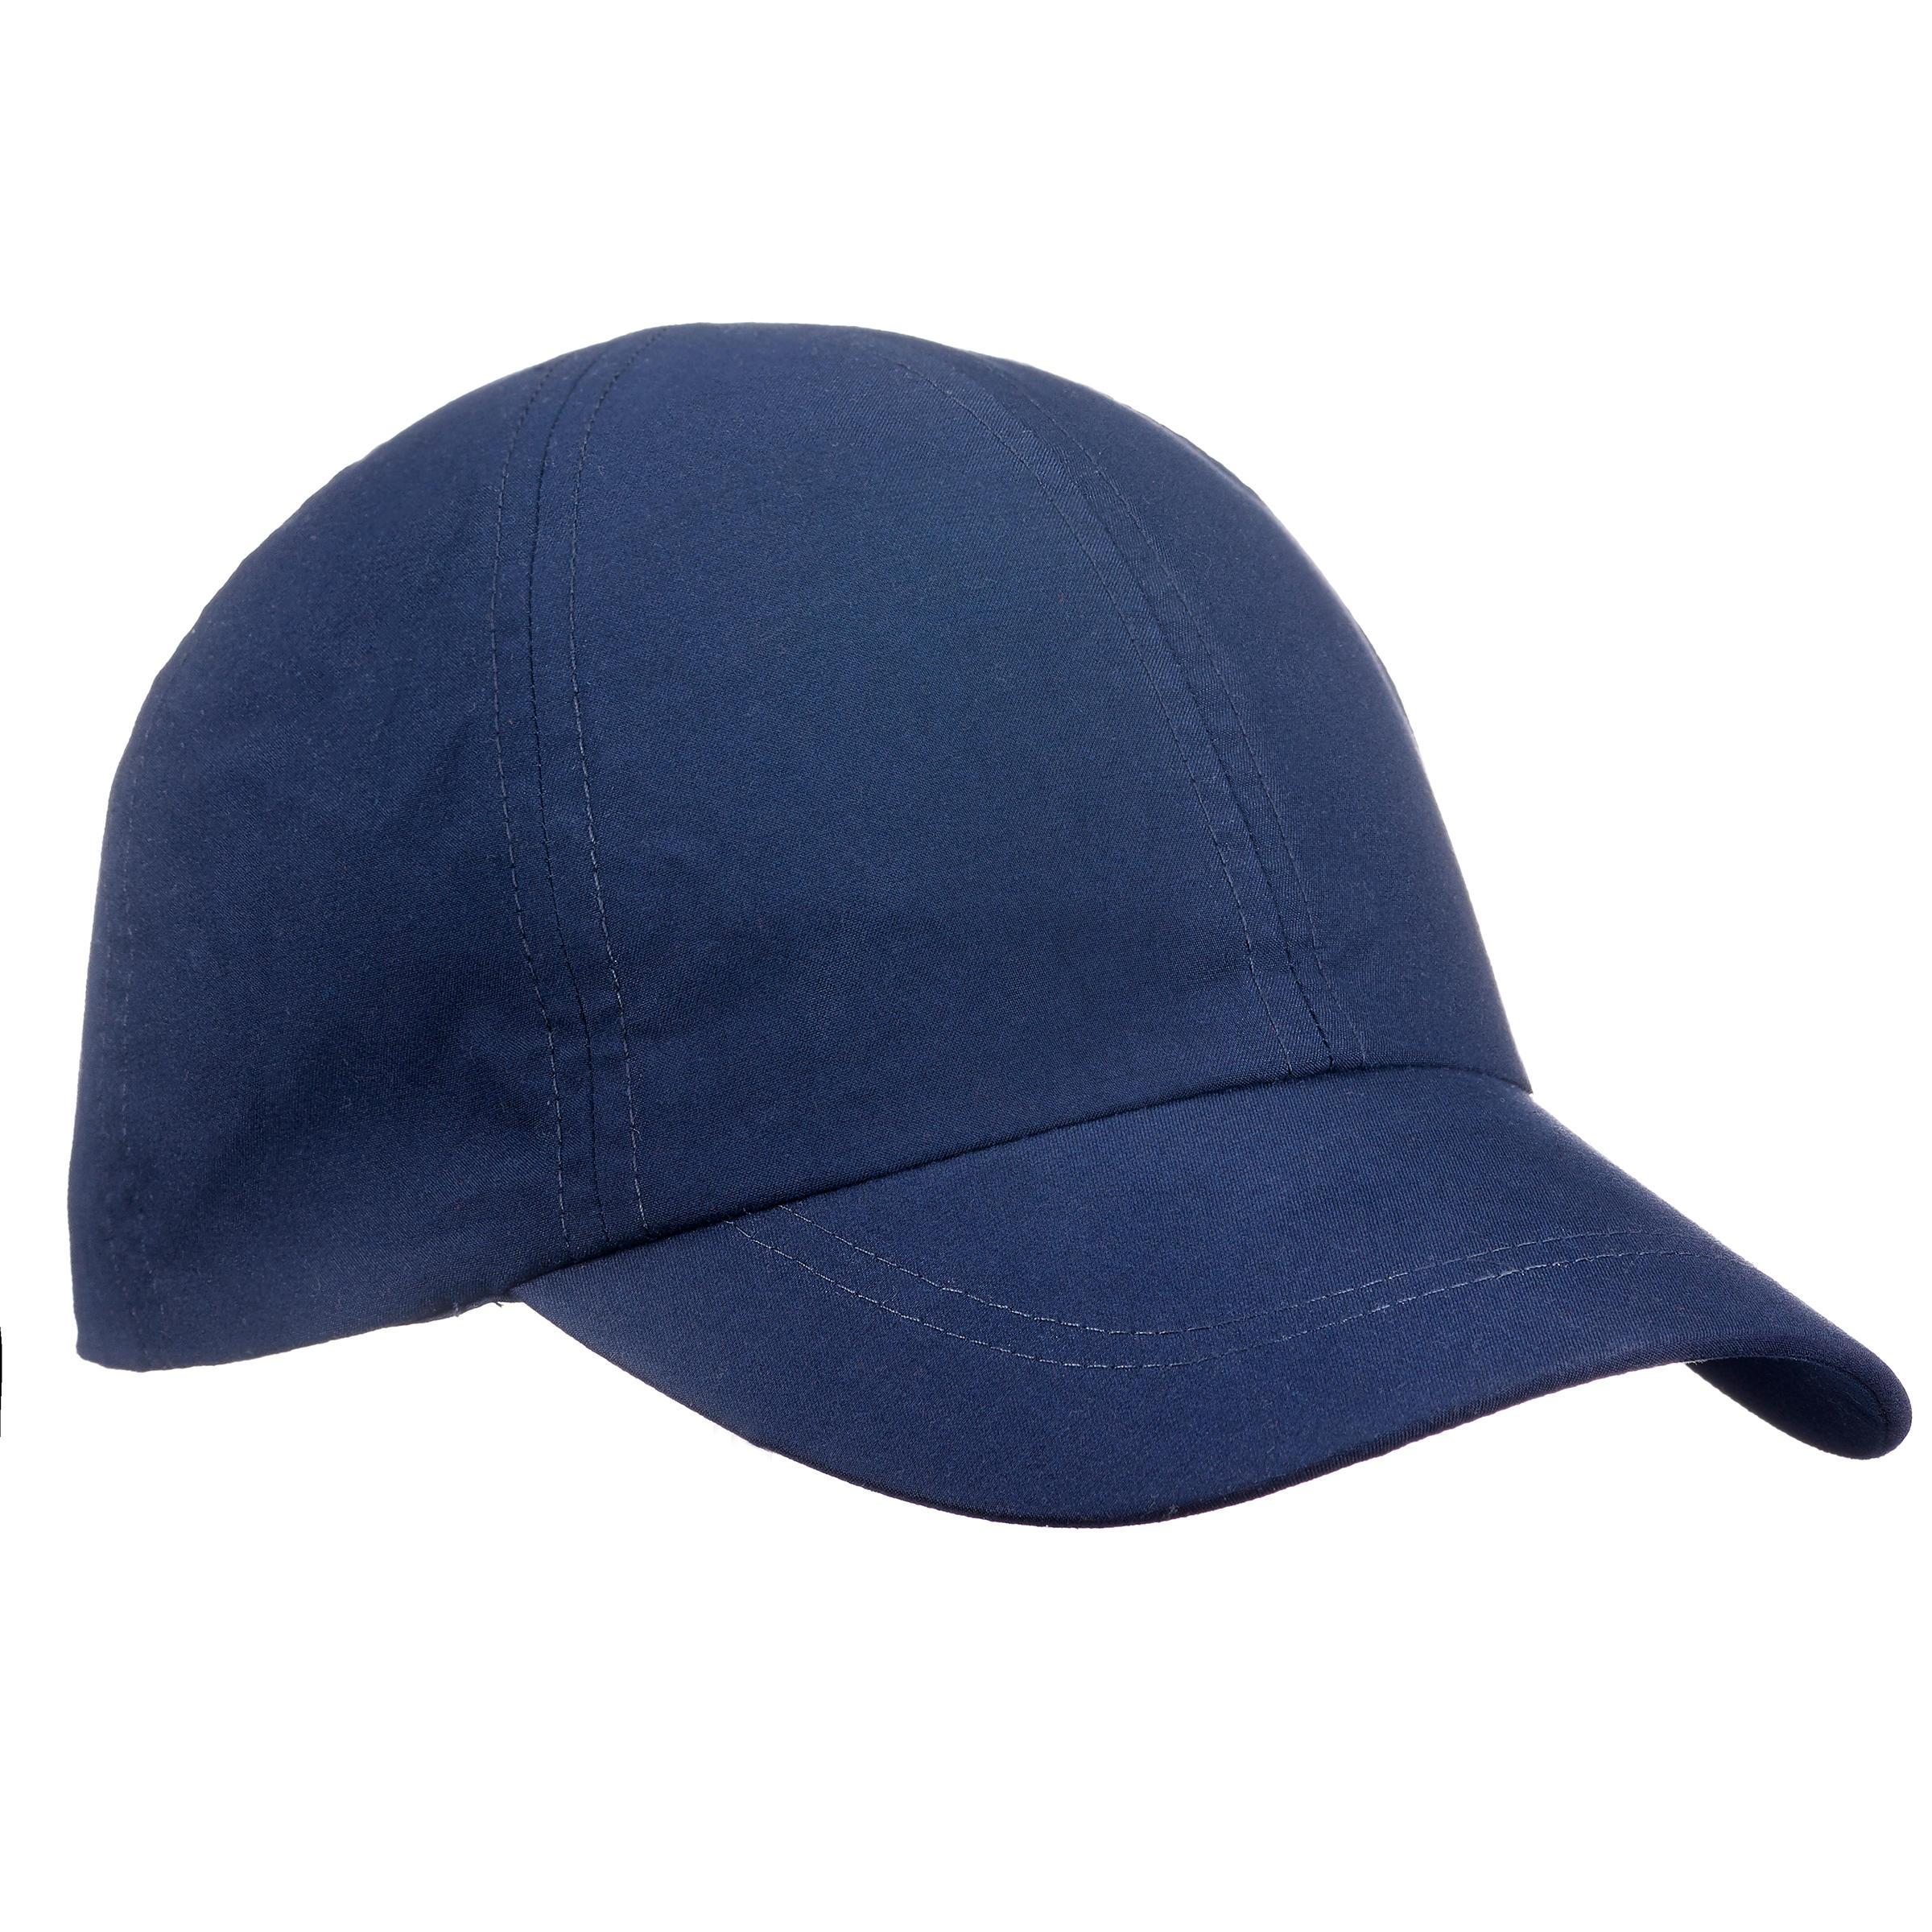 [โปรดี!!! ราคาโดนใจ] หมวกสำหรับการเทรคกิ้งบนภูเขารุ่น TREK 100 (สีฟ้า)